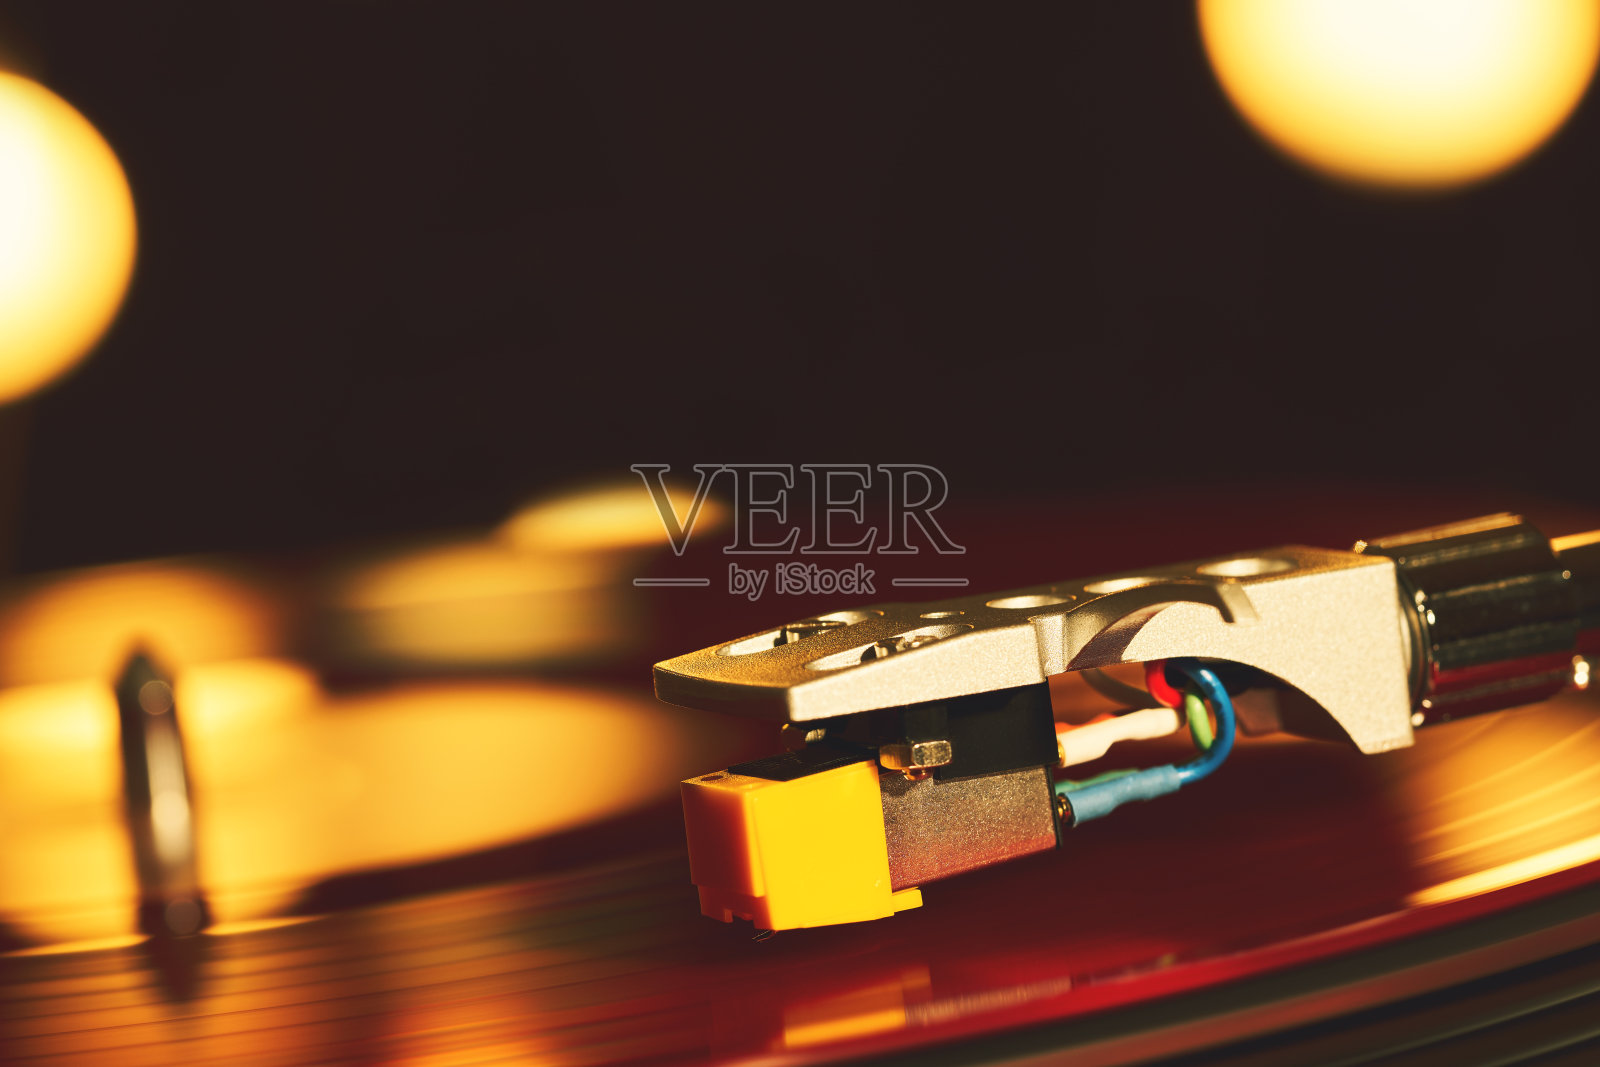 唱片机。音响技术为DJ混合和播放音乐。黑胶唱片上的针。红黑胶唱片。标签。明亮的聚会灯照亮了盘子的表面照片摄影图片